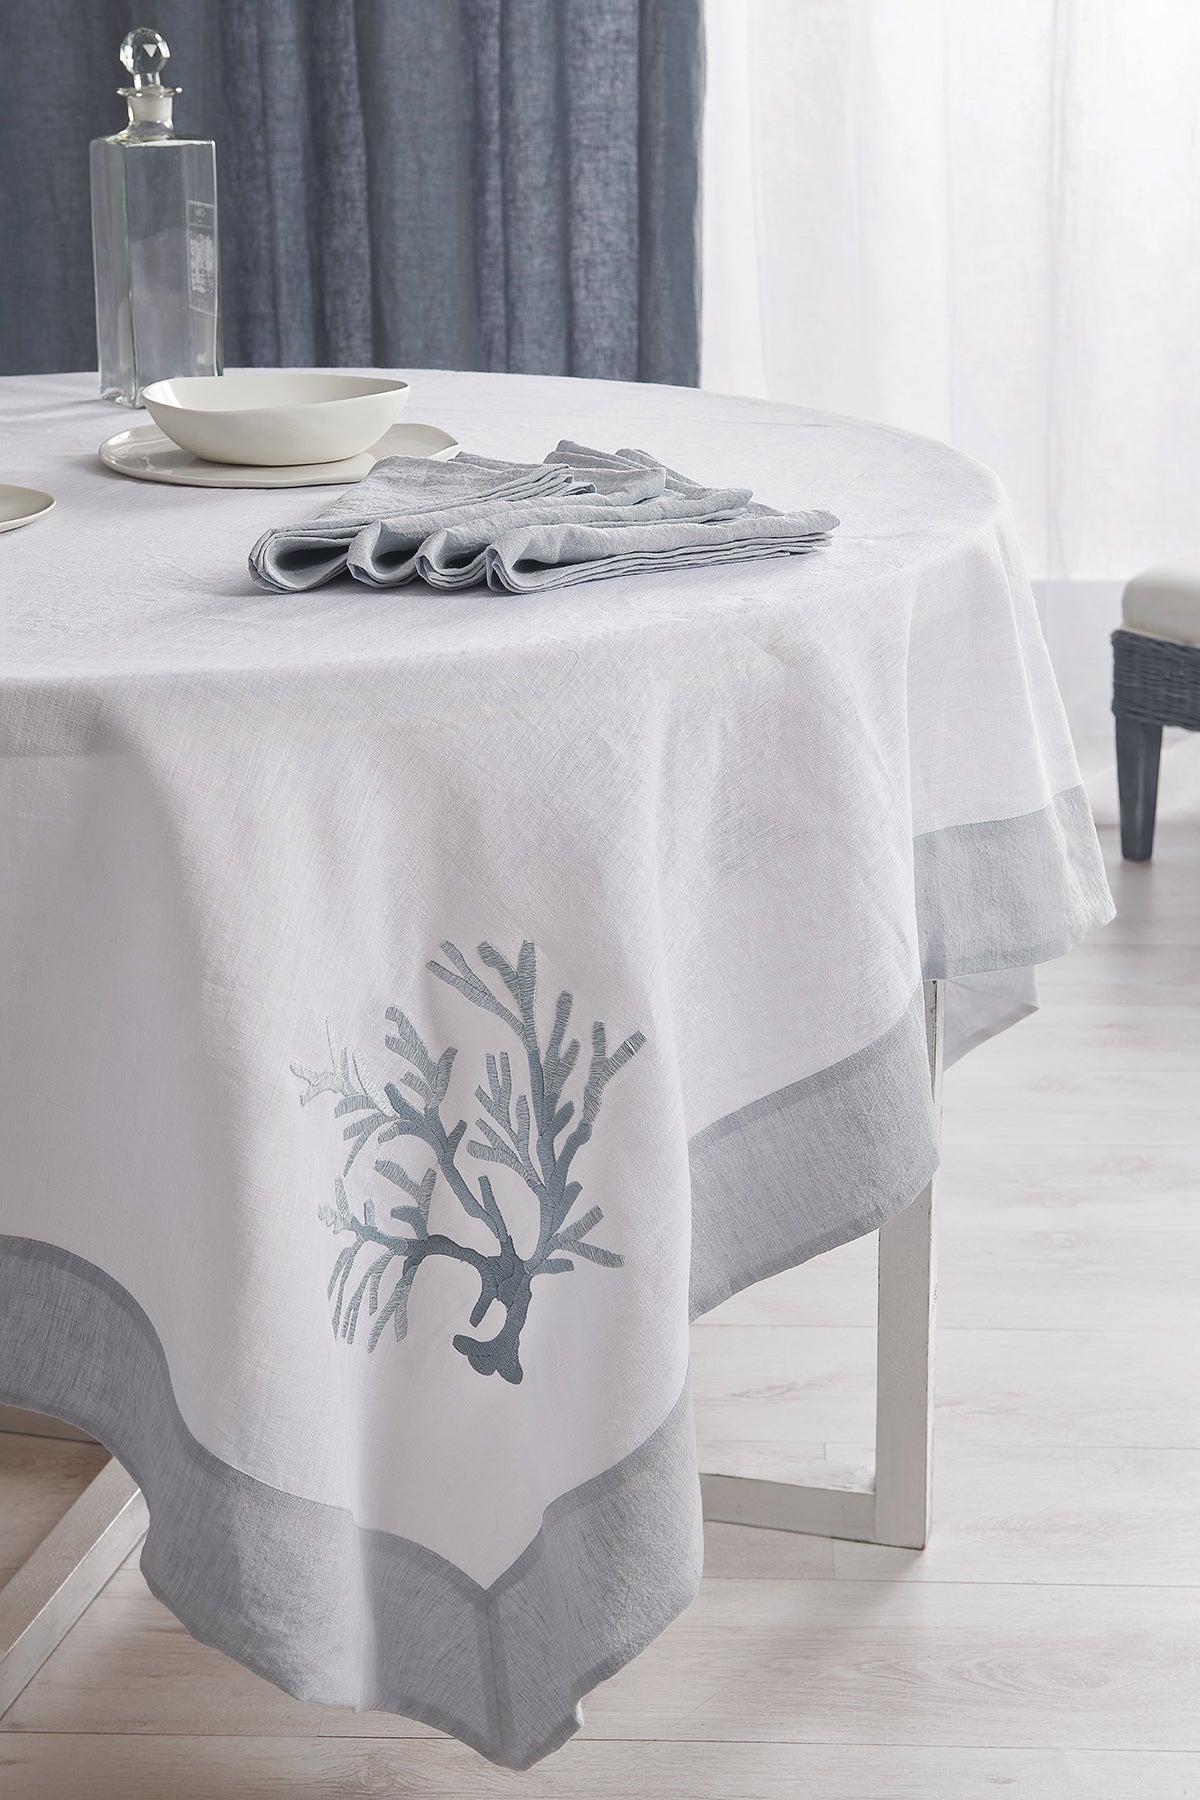 Tovaglia Corallomania Table linens lino